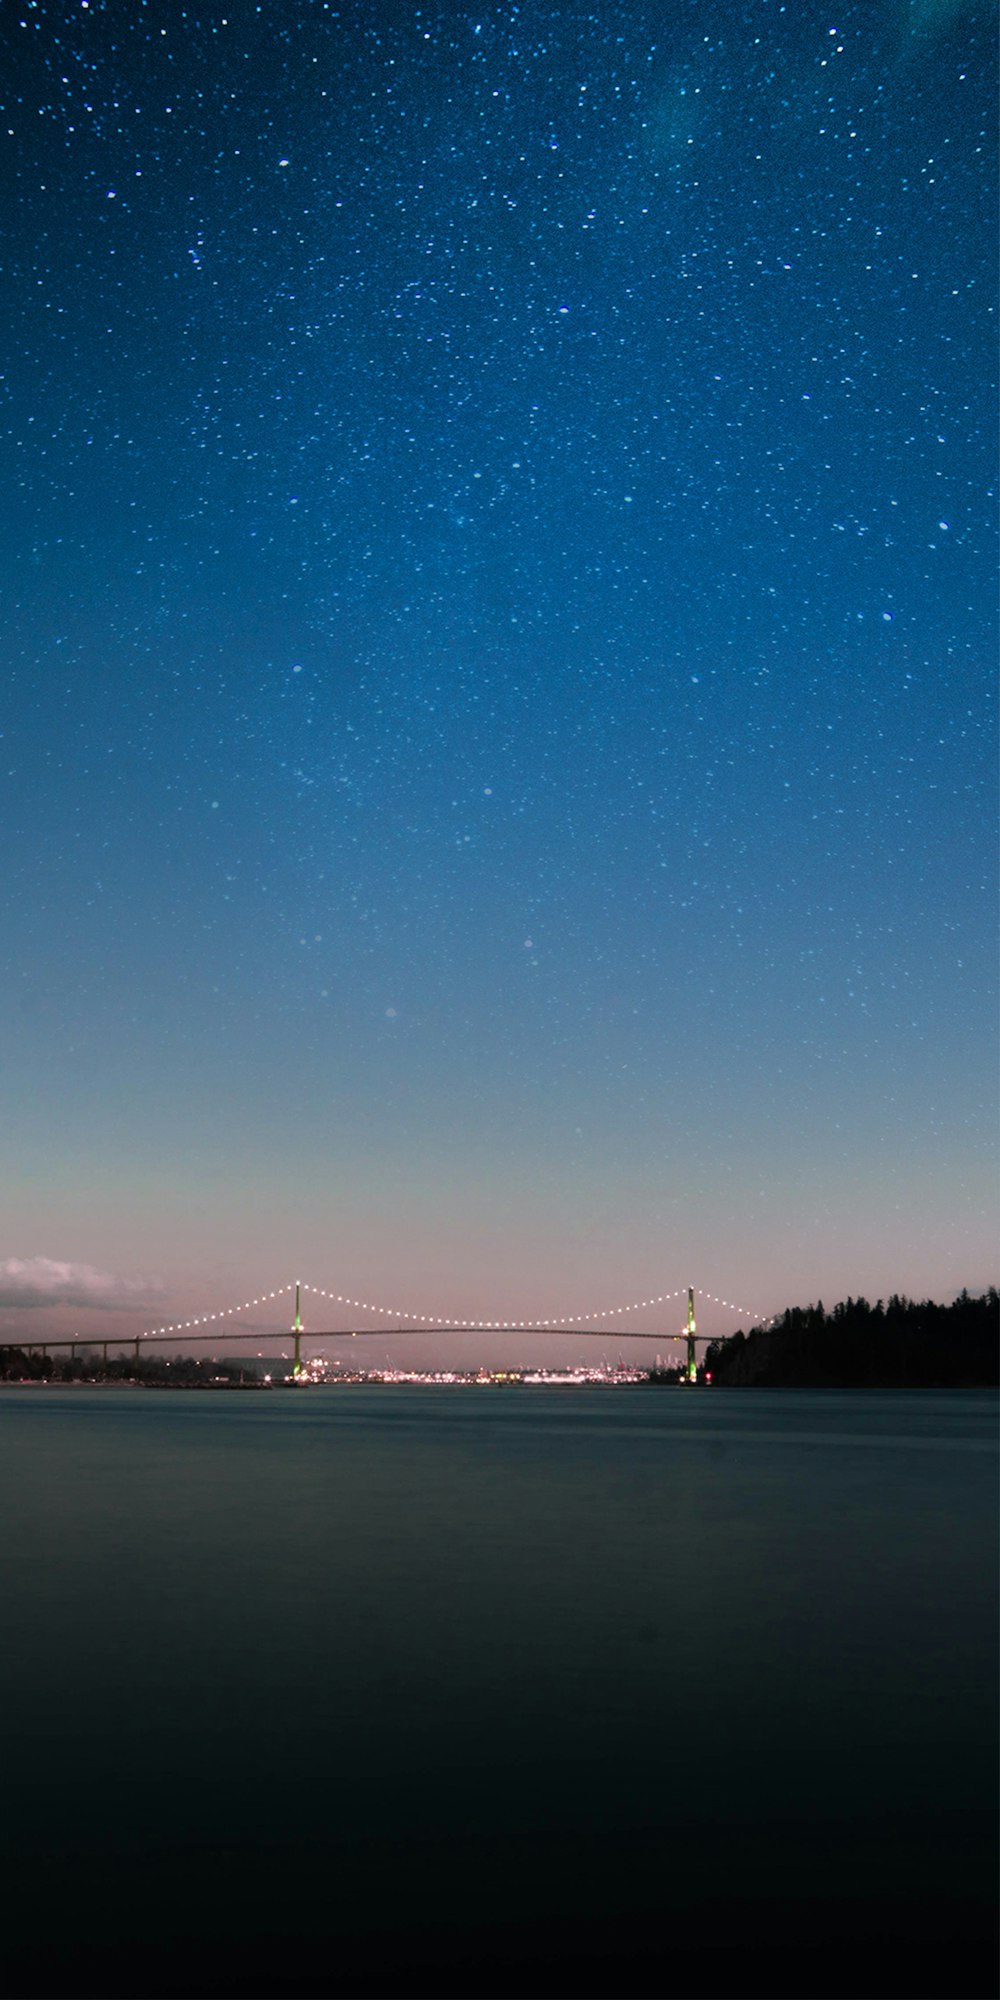 beleuchtete Brücke unter blau-weißem Himmel bei Nacht